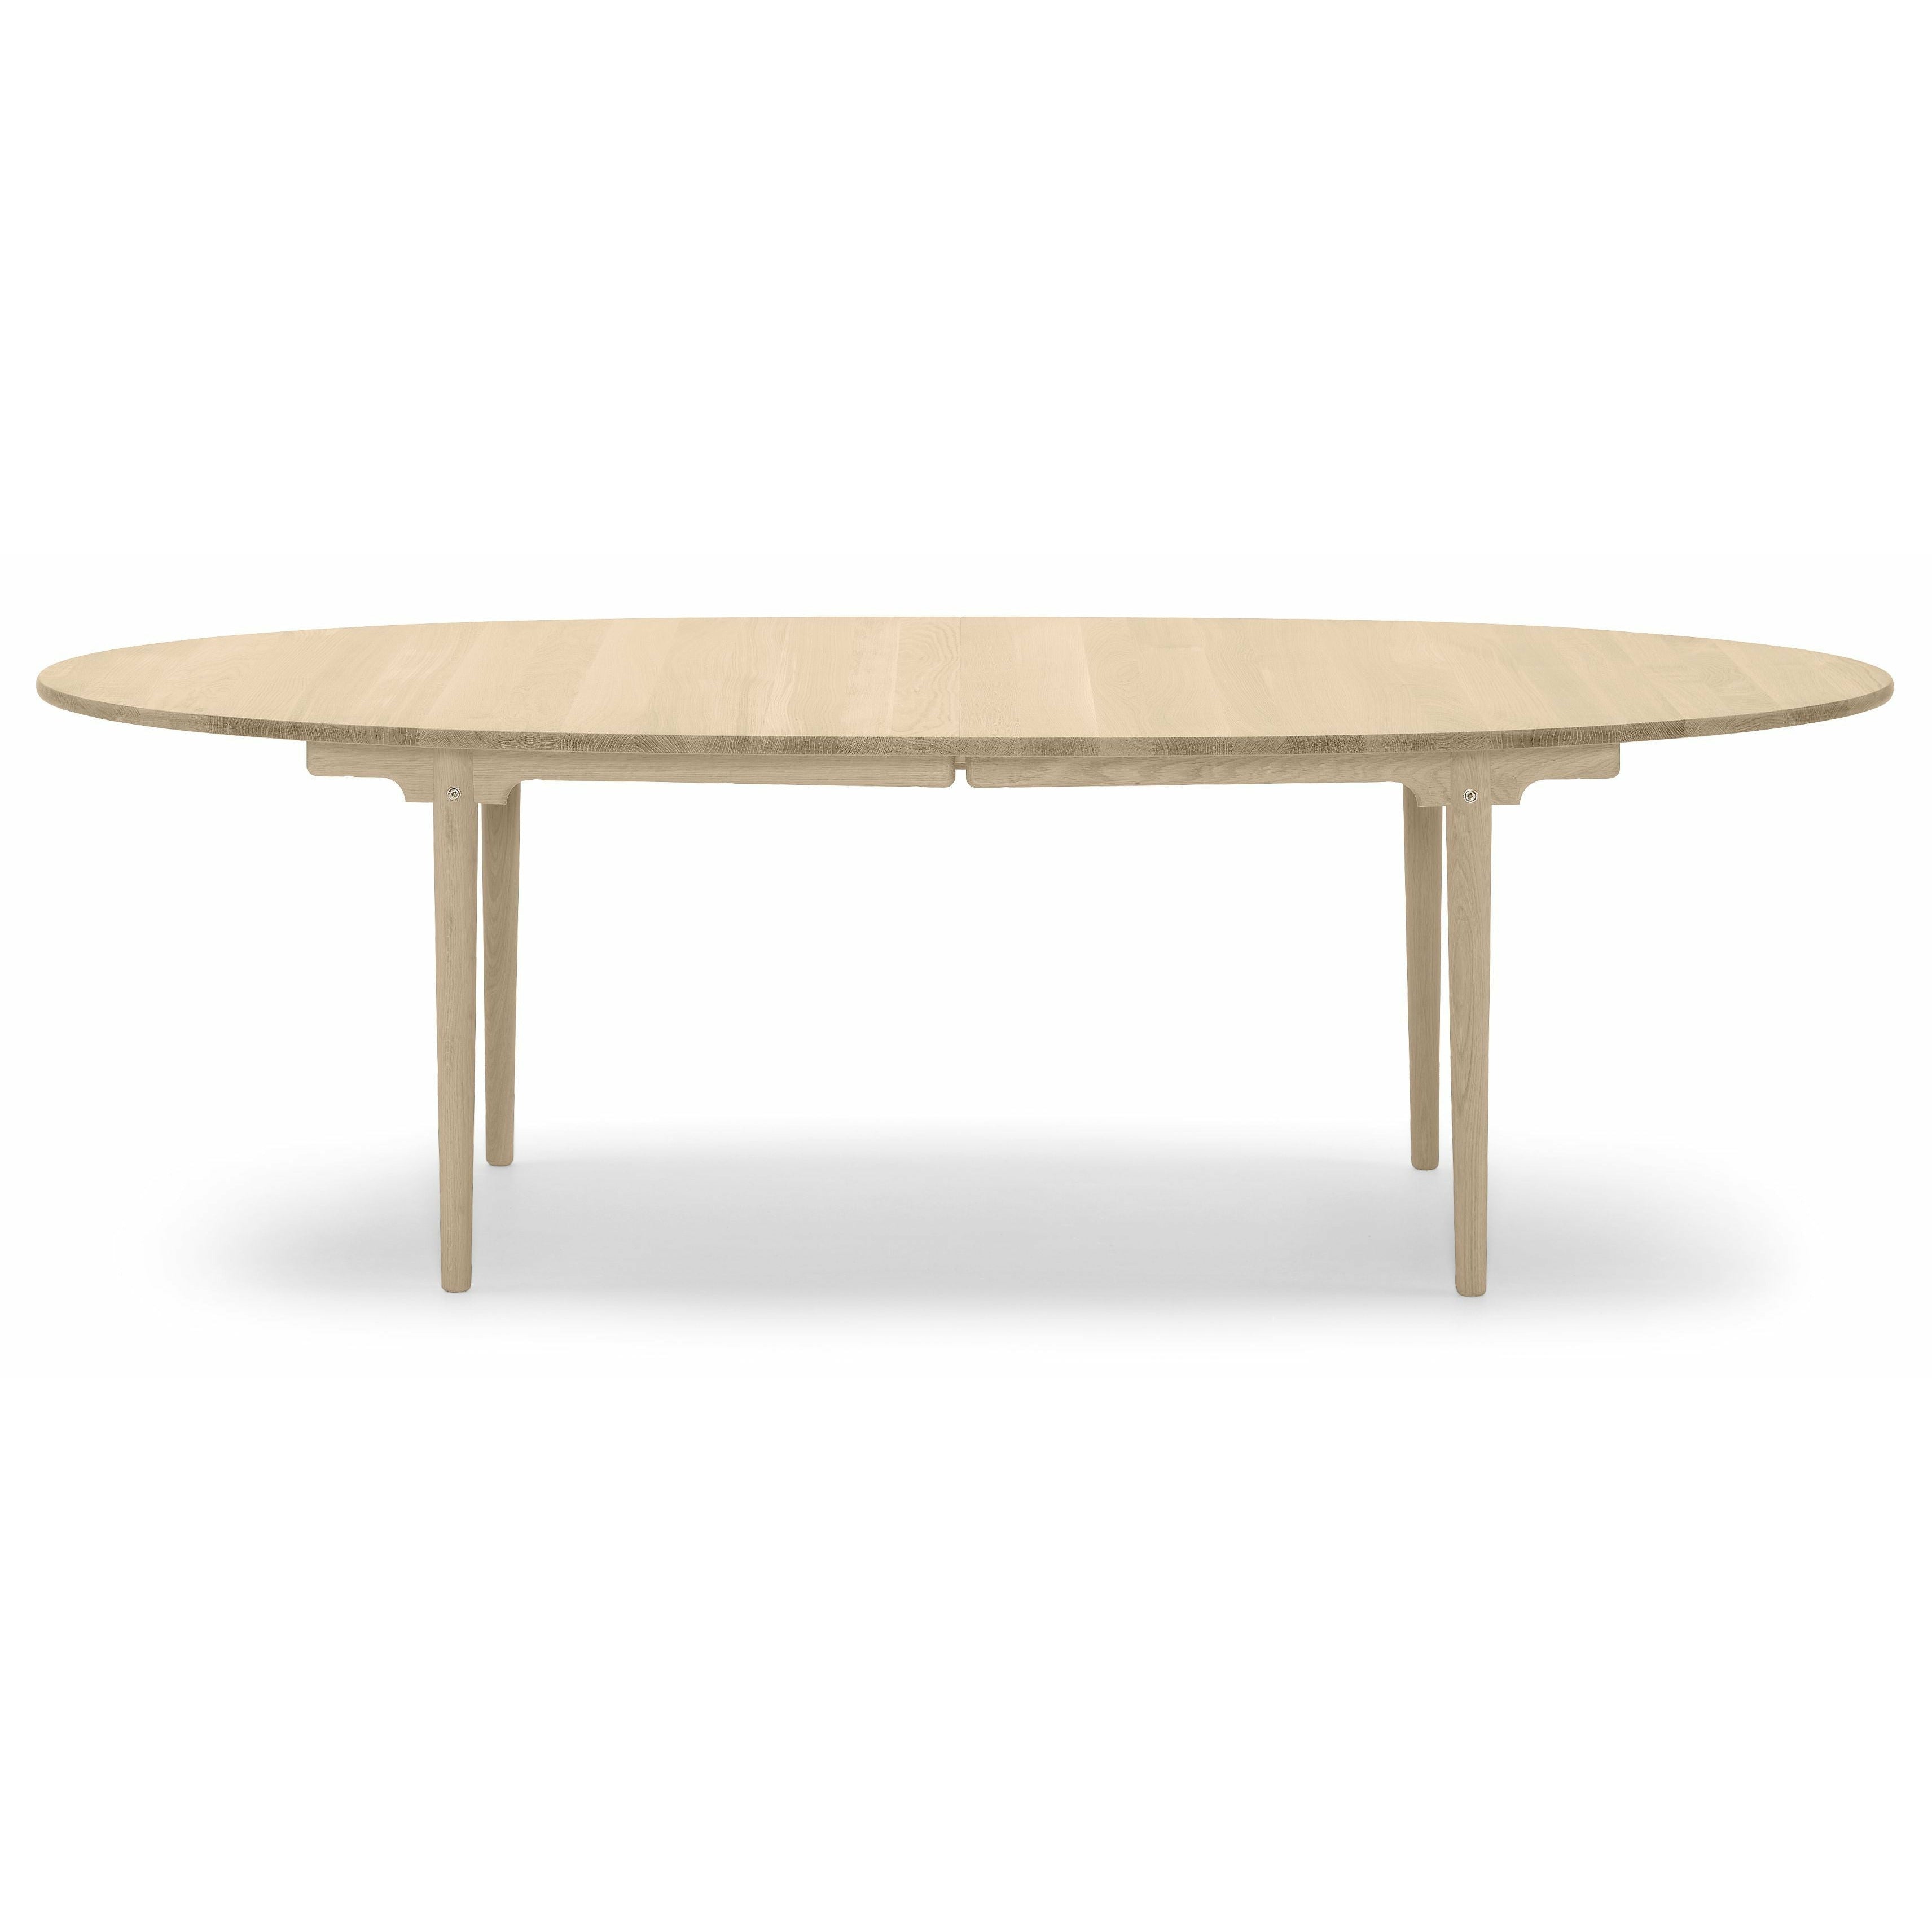 Carl Hansen CH339 matbord designad för 2 drag ut plattor, ekoljad